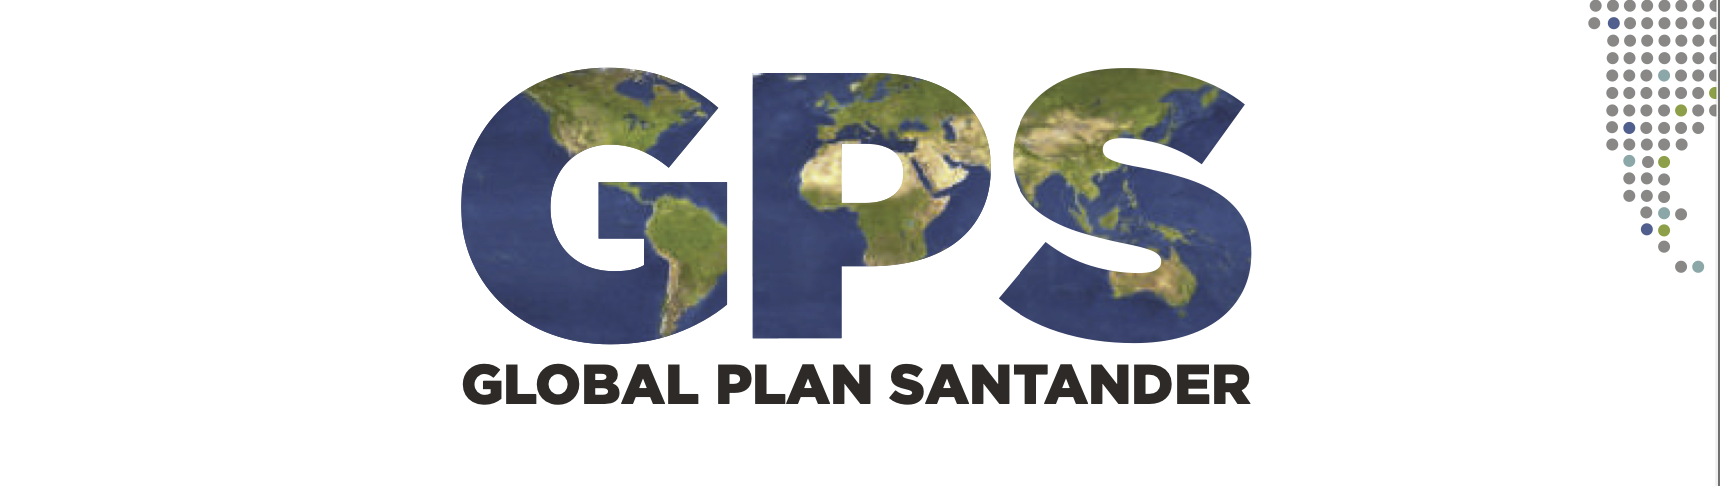 internacionalización - Global Plan Santander GPS